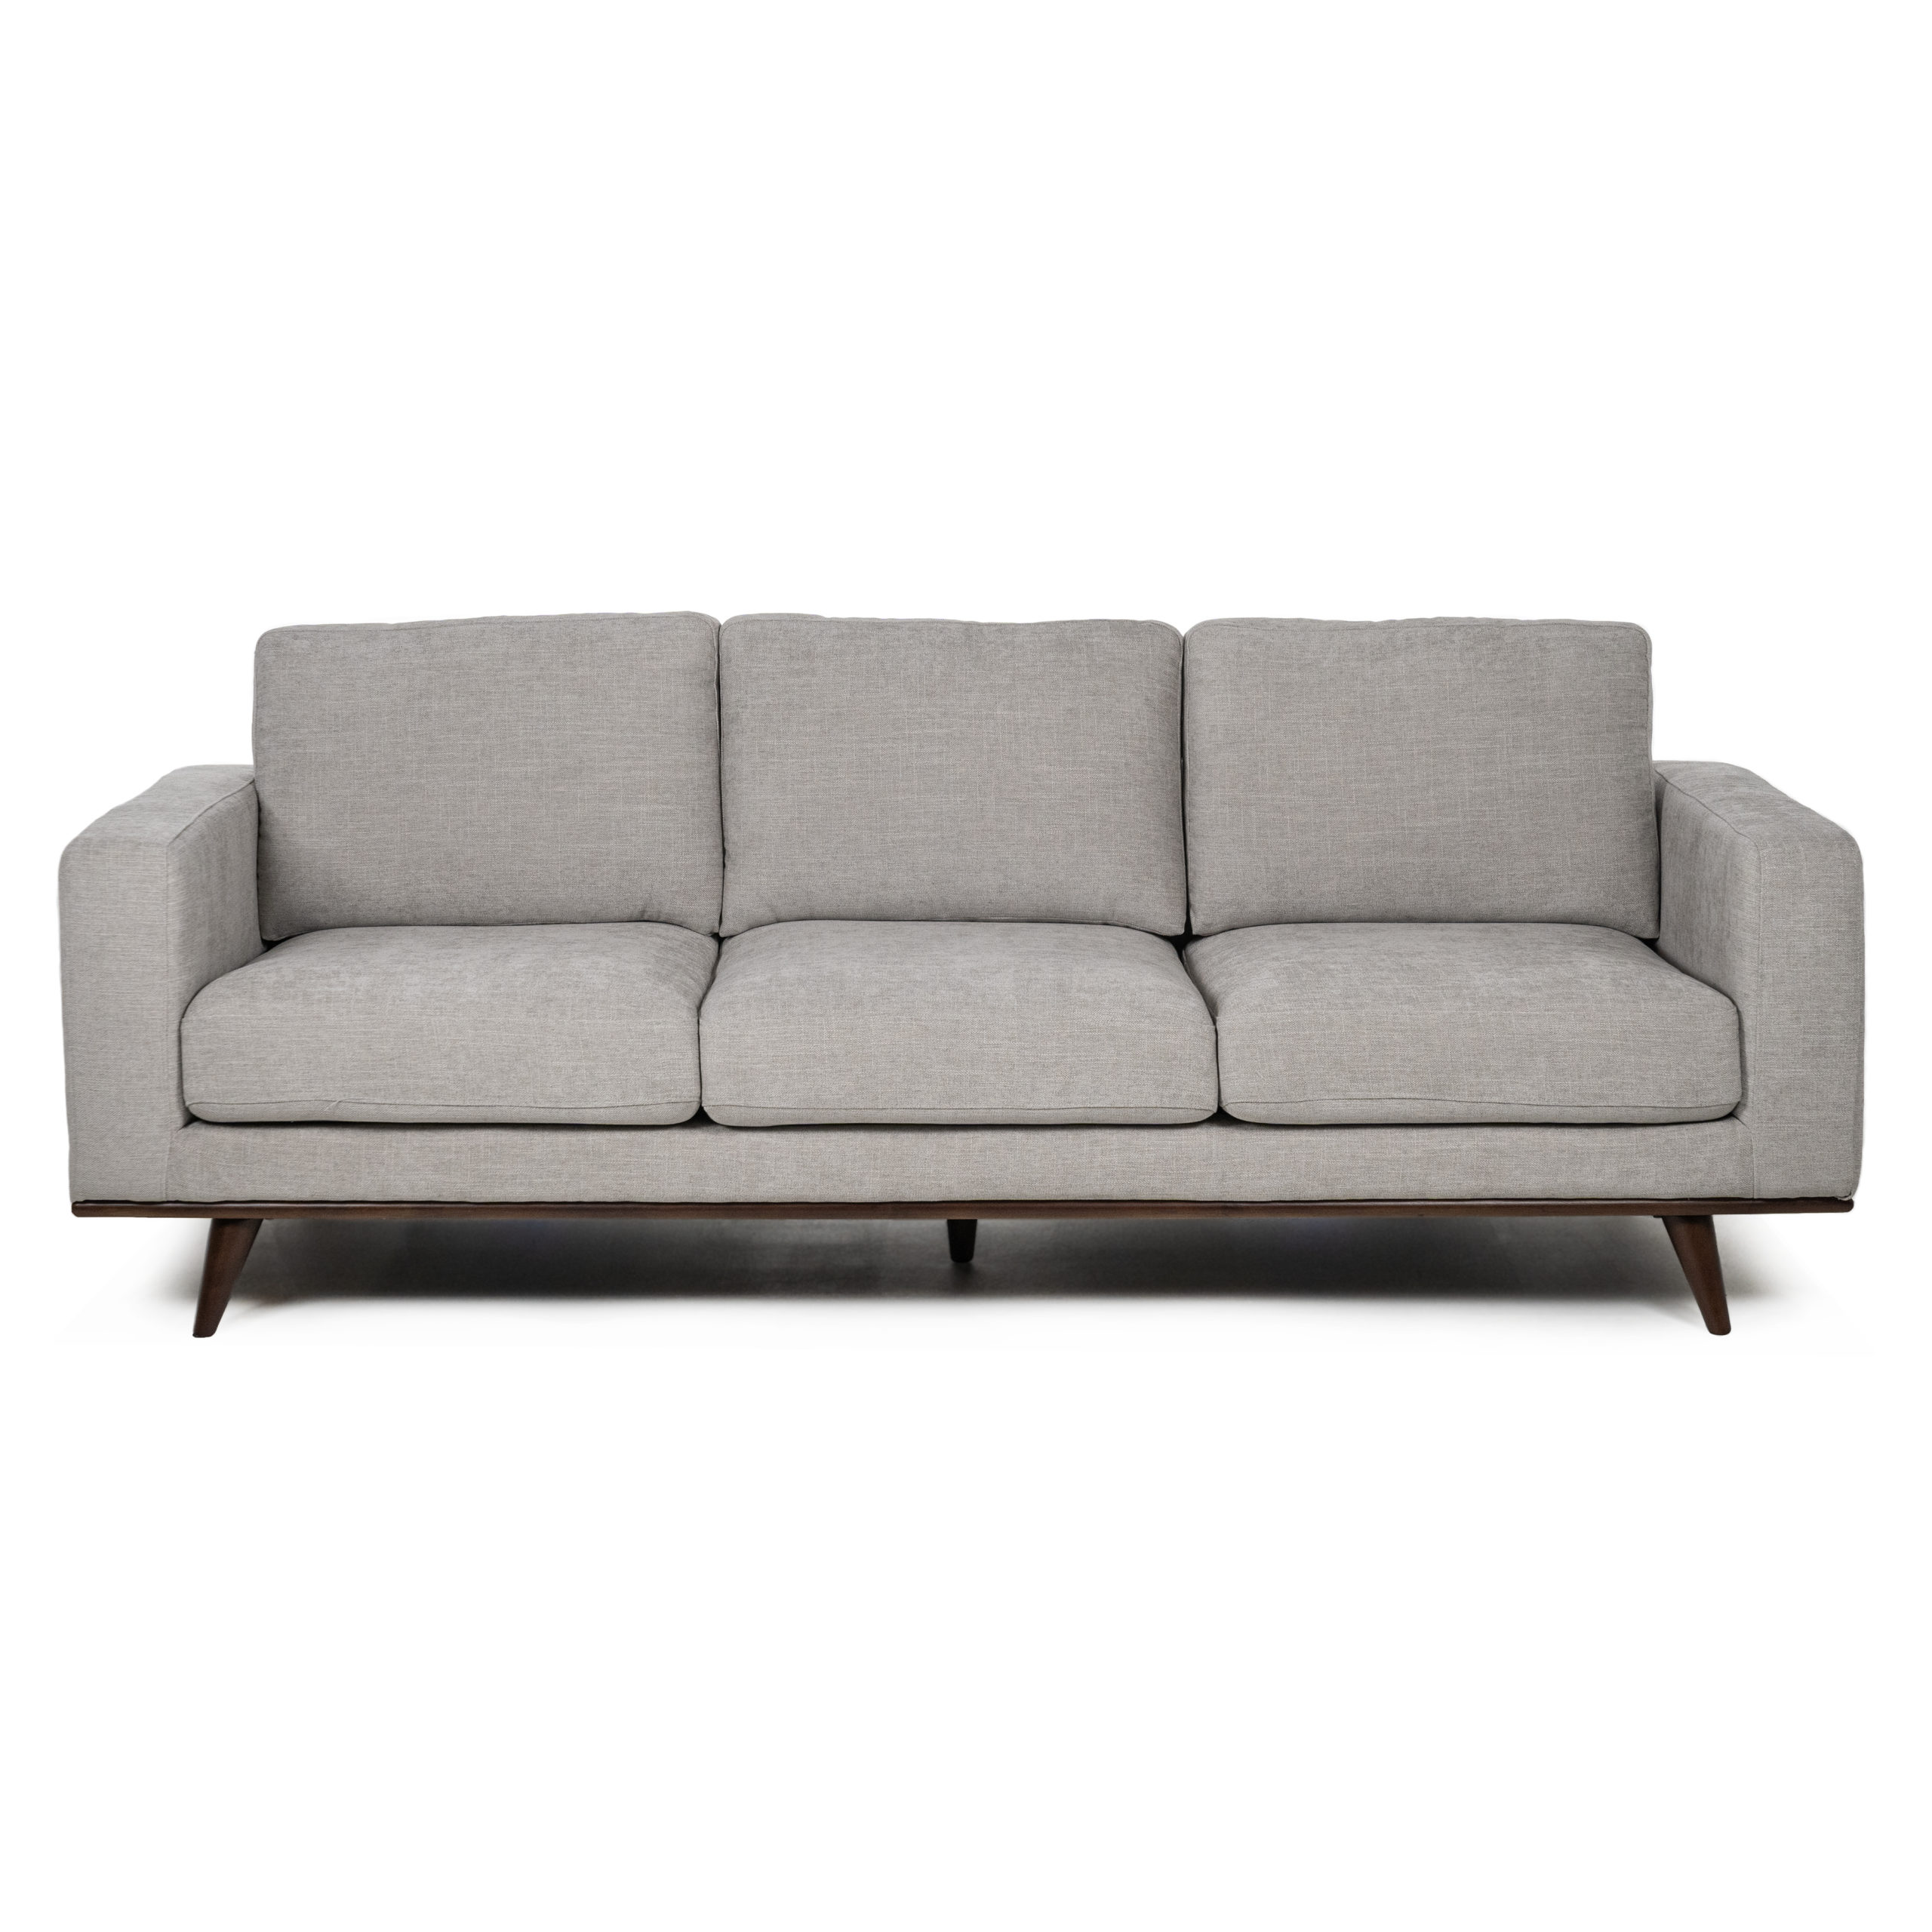 Fenty Grey 3 seater Sofa